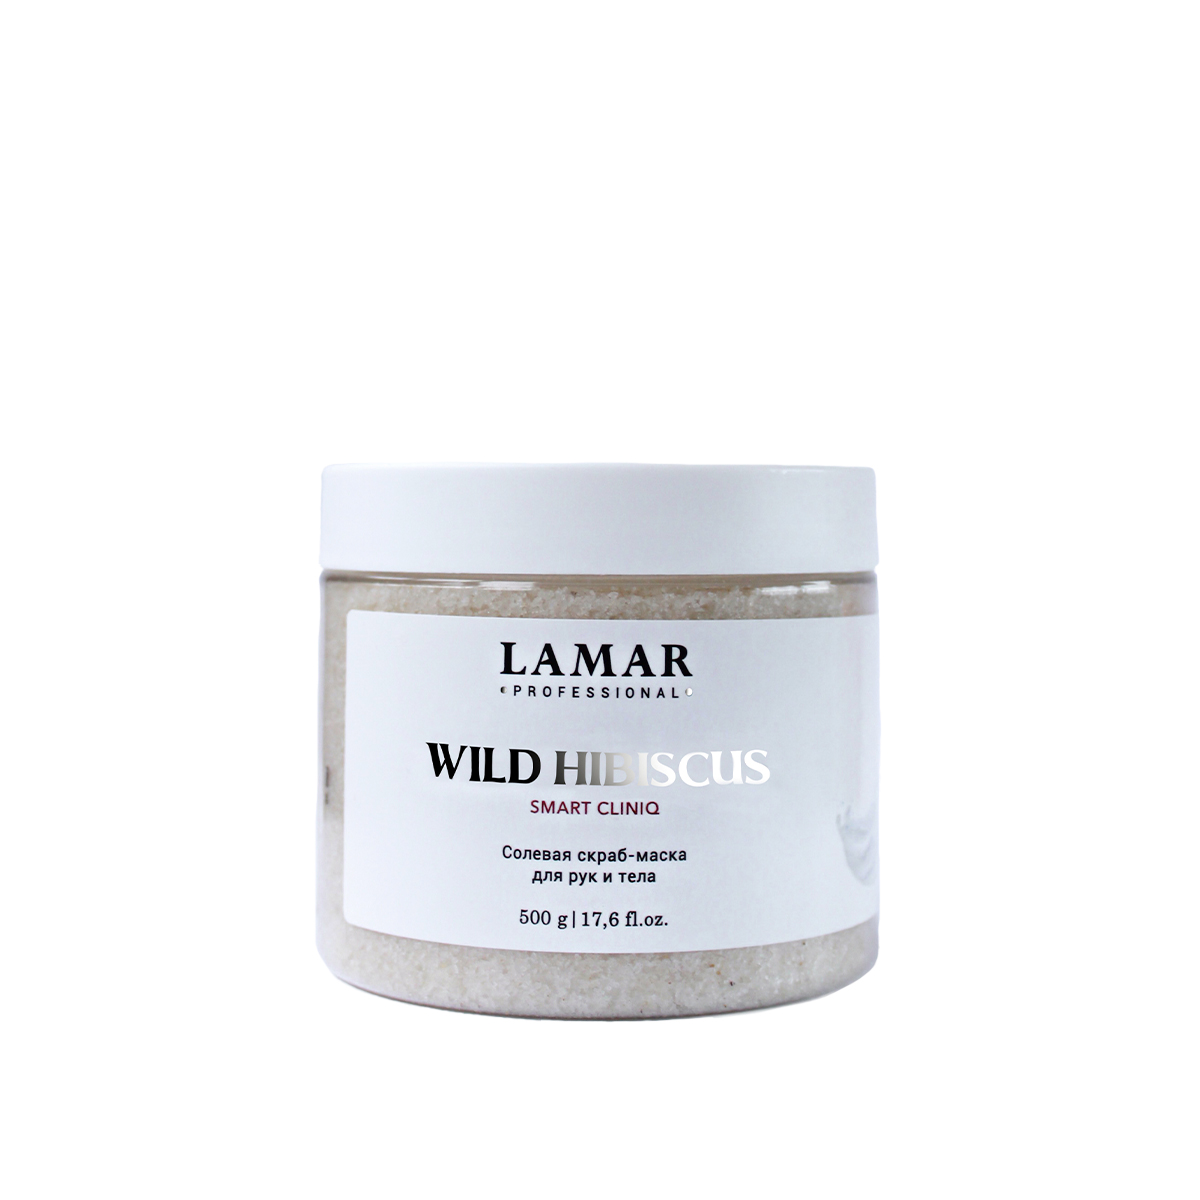 Скраб-маска для рук и тела Lamar Professional Wild hibiscus солевая 500 г грелка солевая петушок